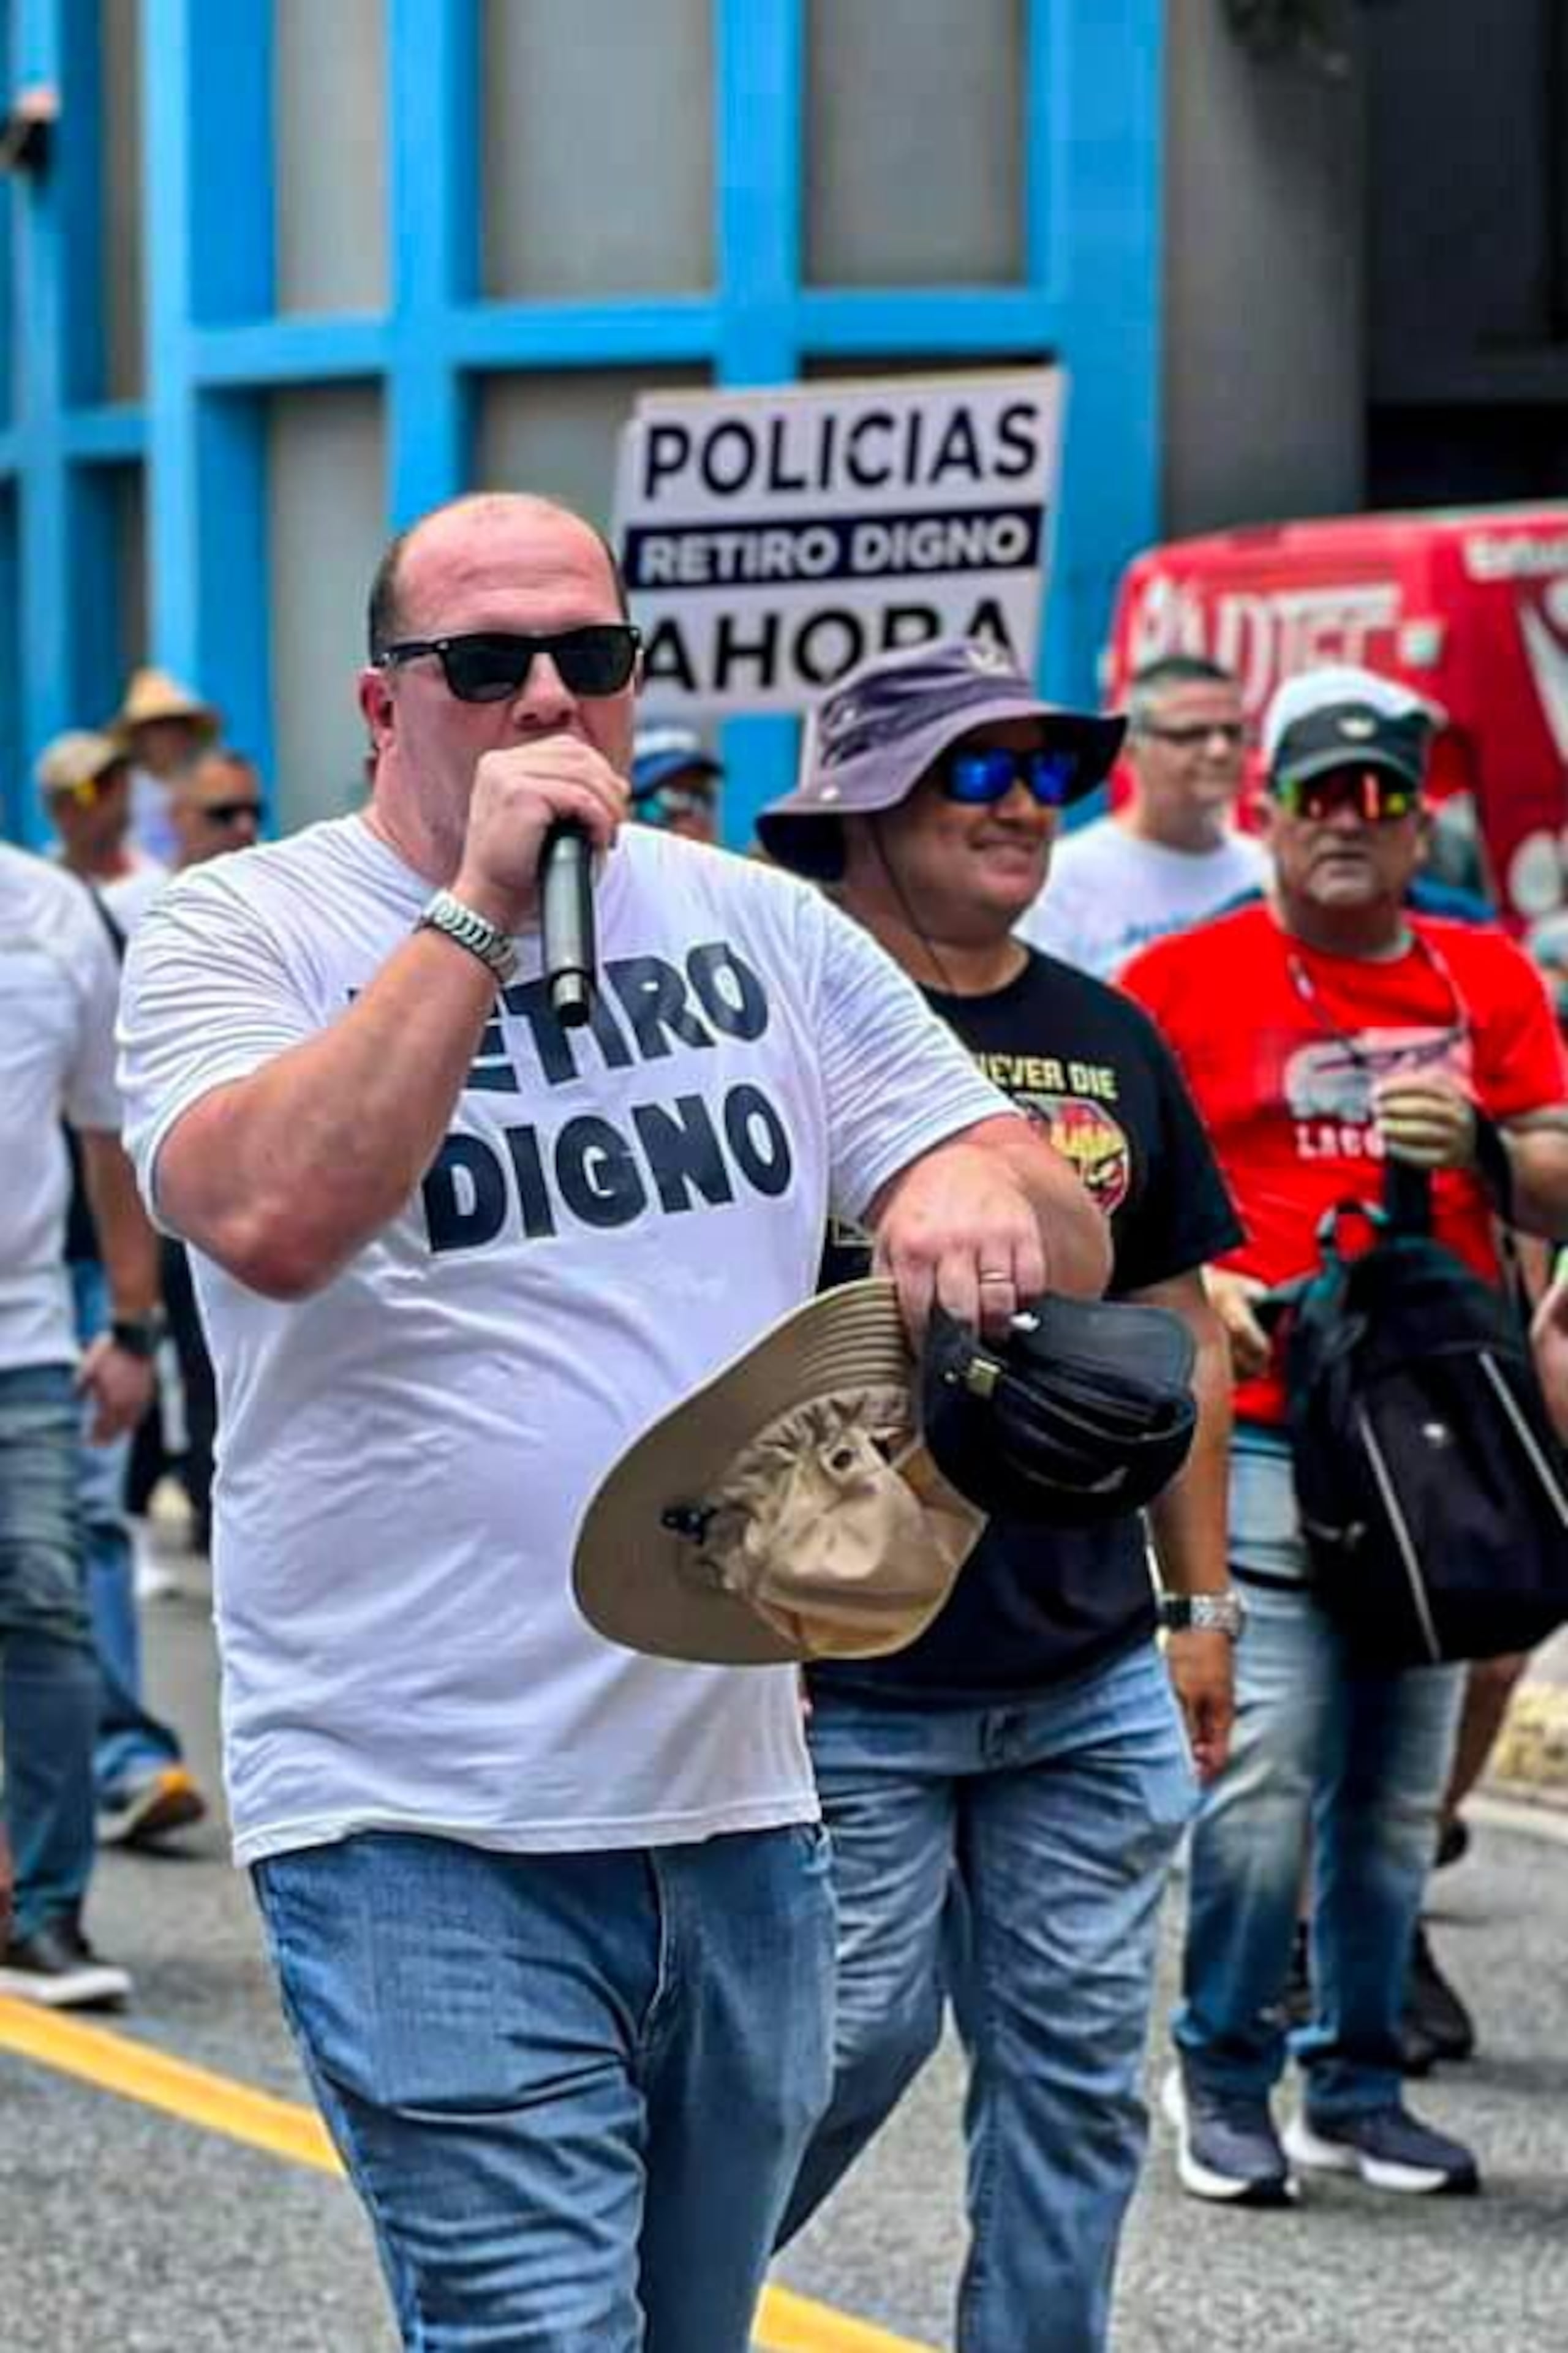 El presidente de la Asociación Policías Unidos Luchando (APUL), Gabriel Hernández Ramos, convocó a una manifestación frente al Capitolio. (Archivo)